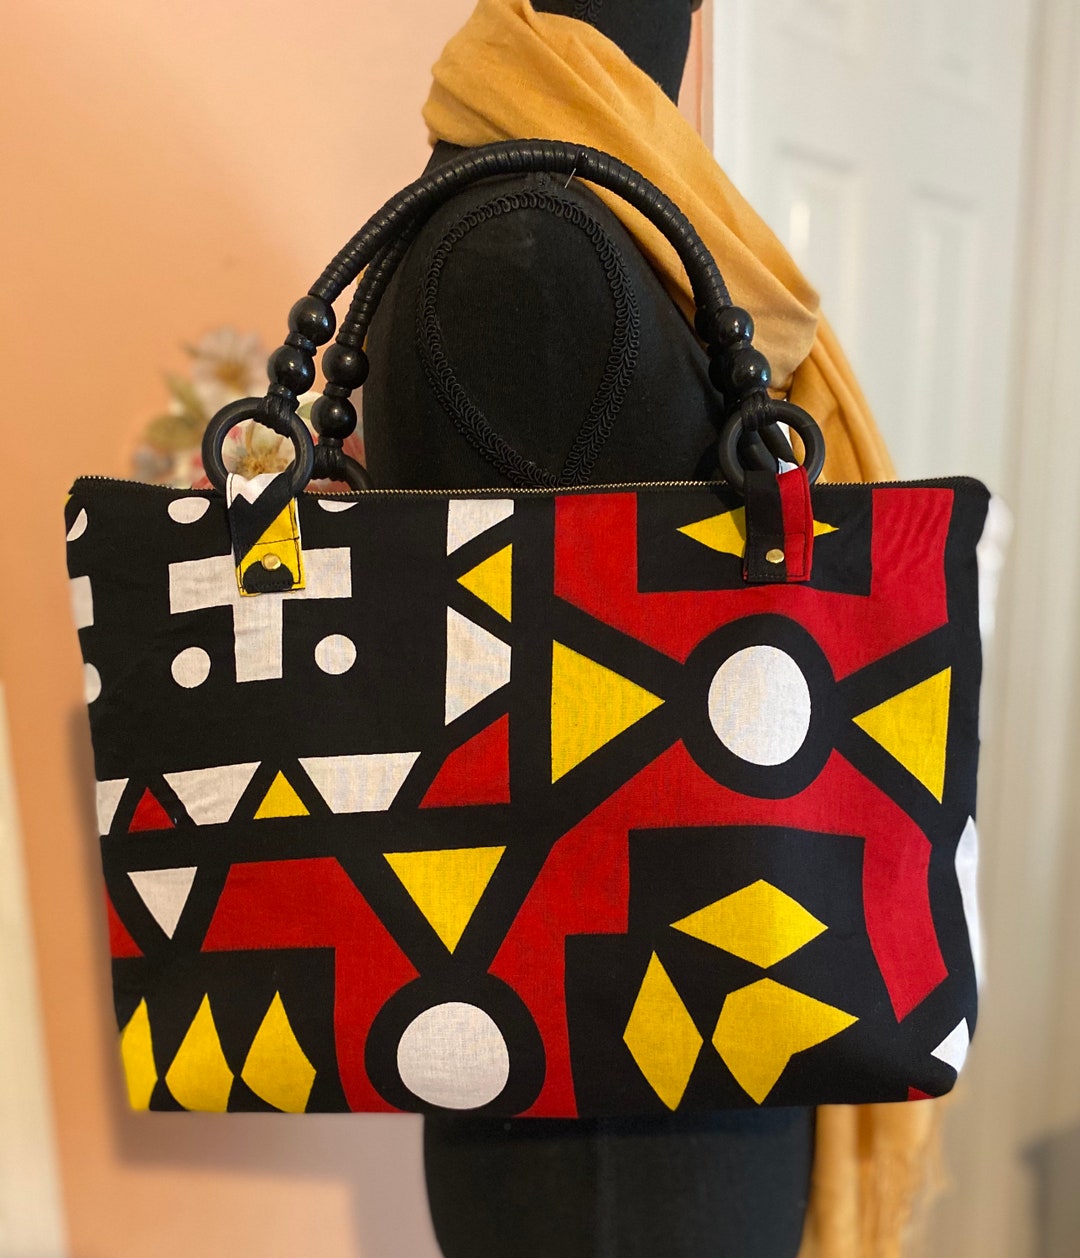 Naimba Collection of African Print Handbags - Etsy